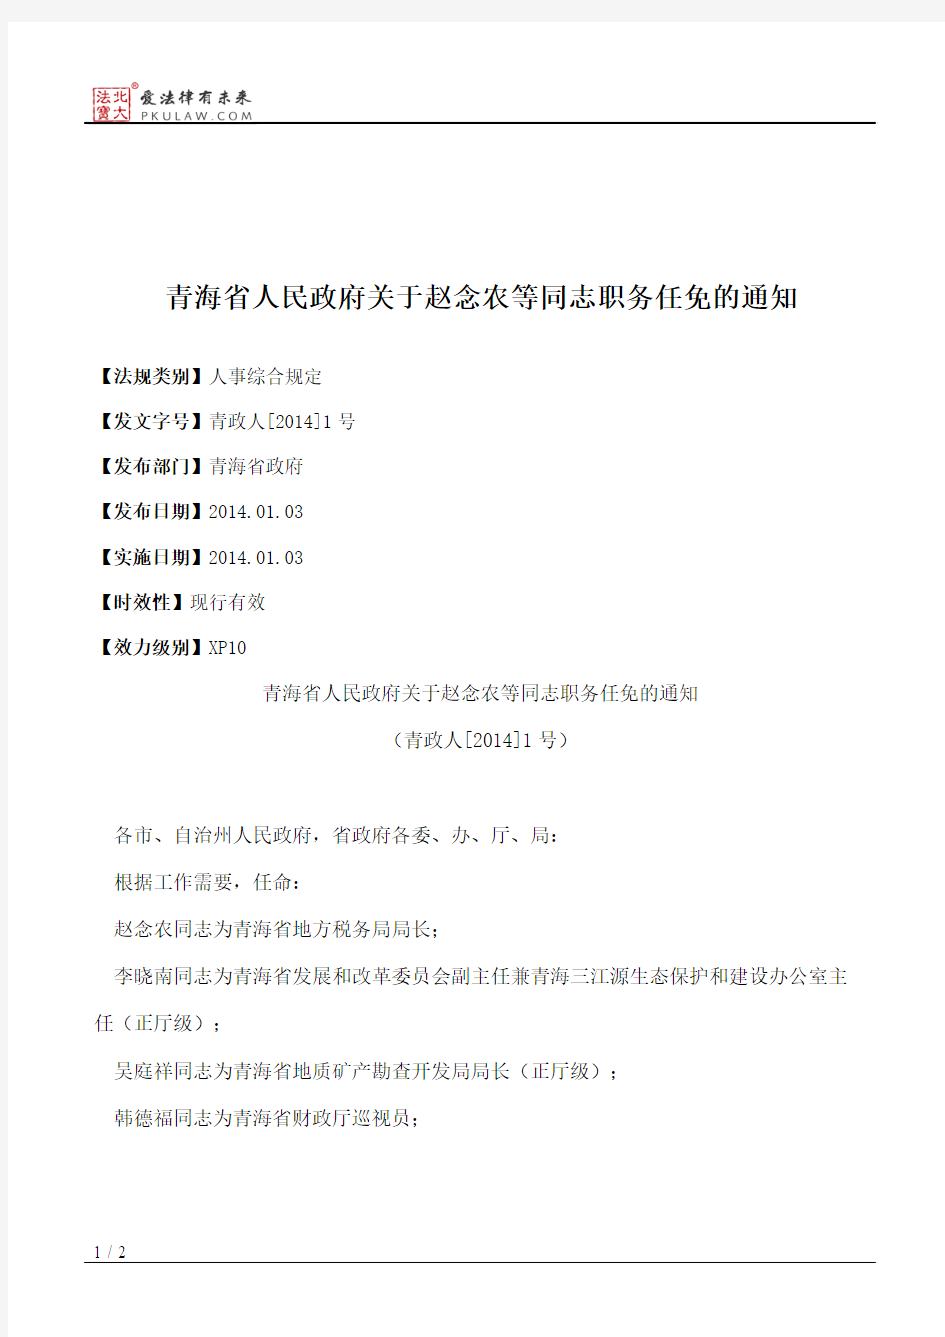 青海省人民政府关于赵念农等同志职务任免的通知